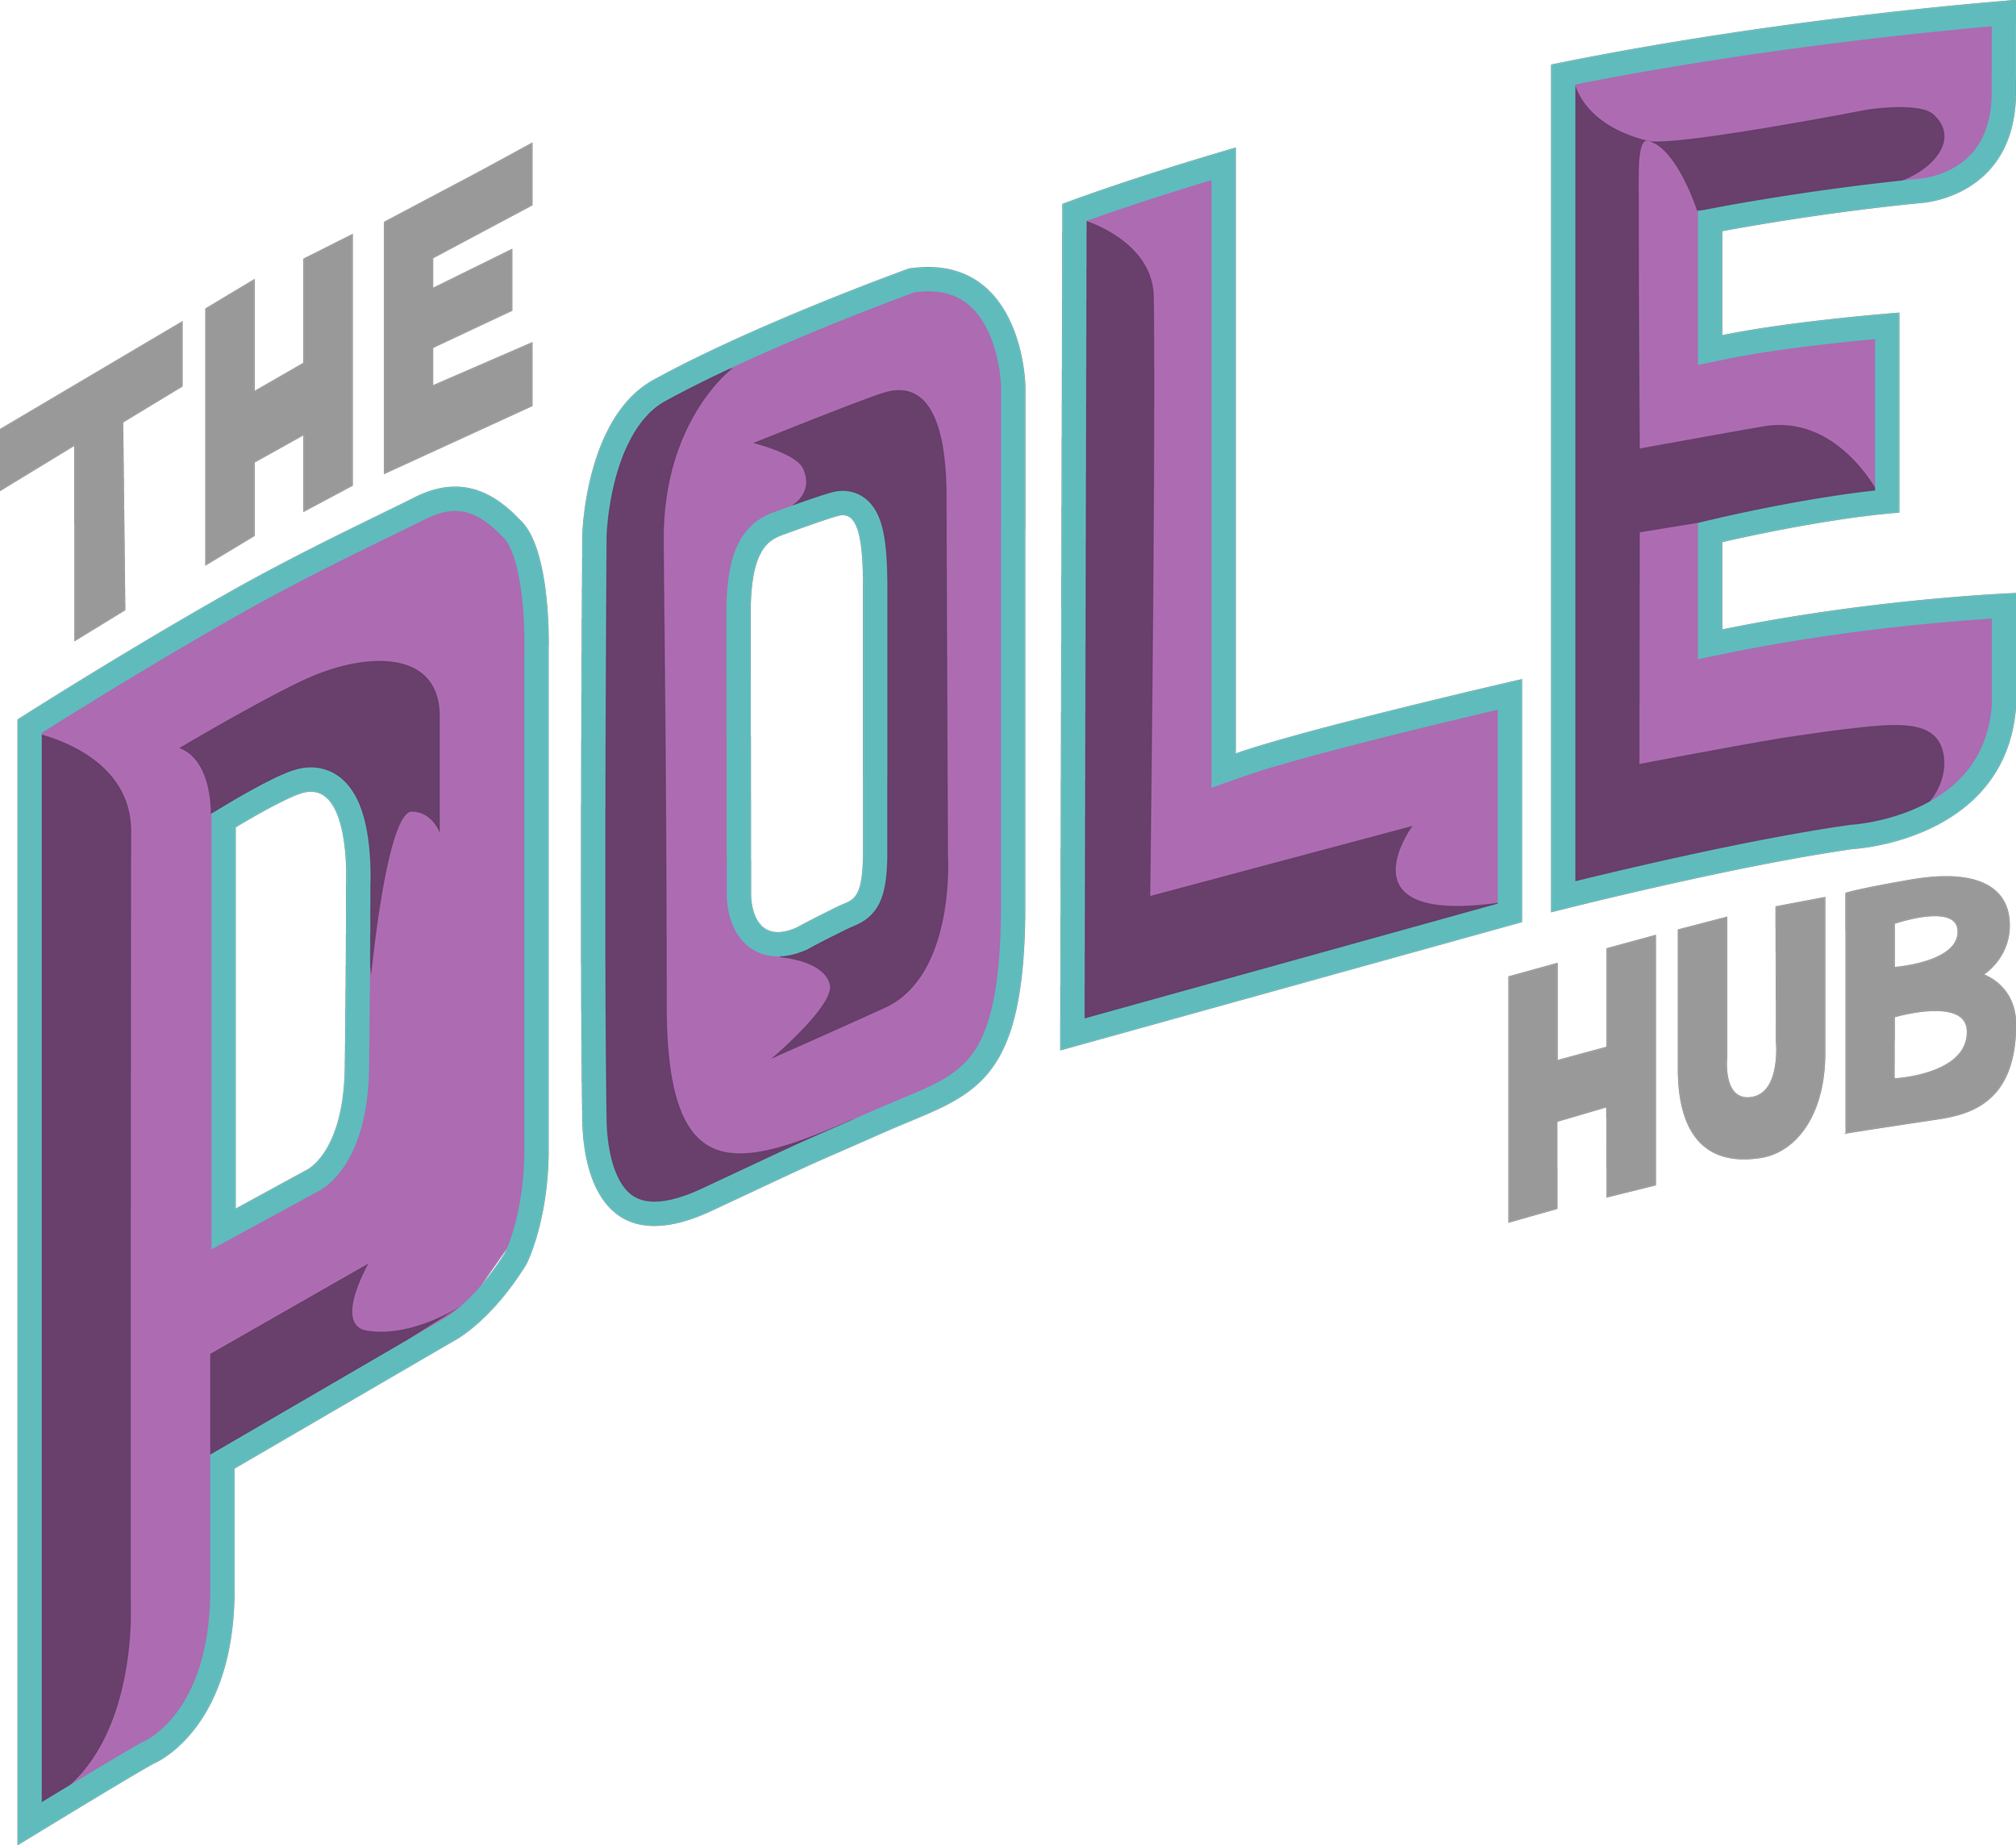 The Pole Hub